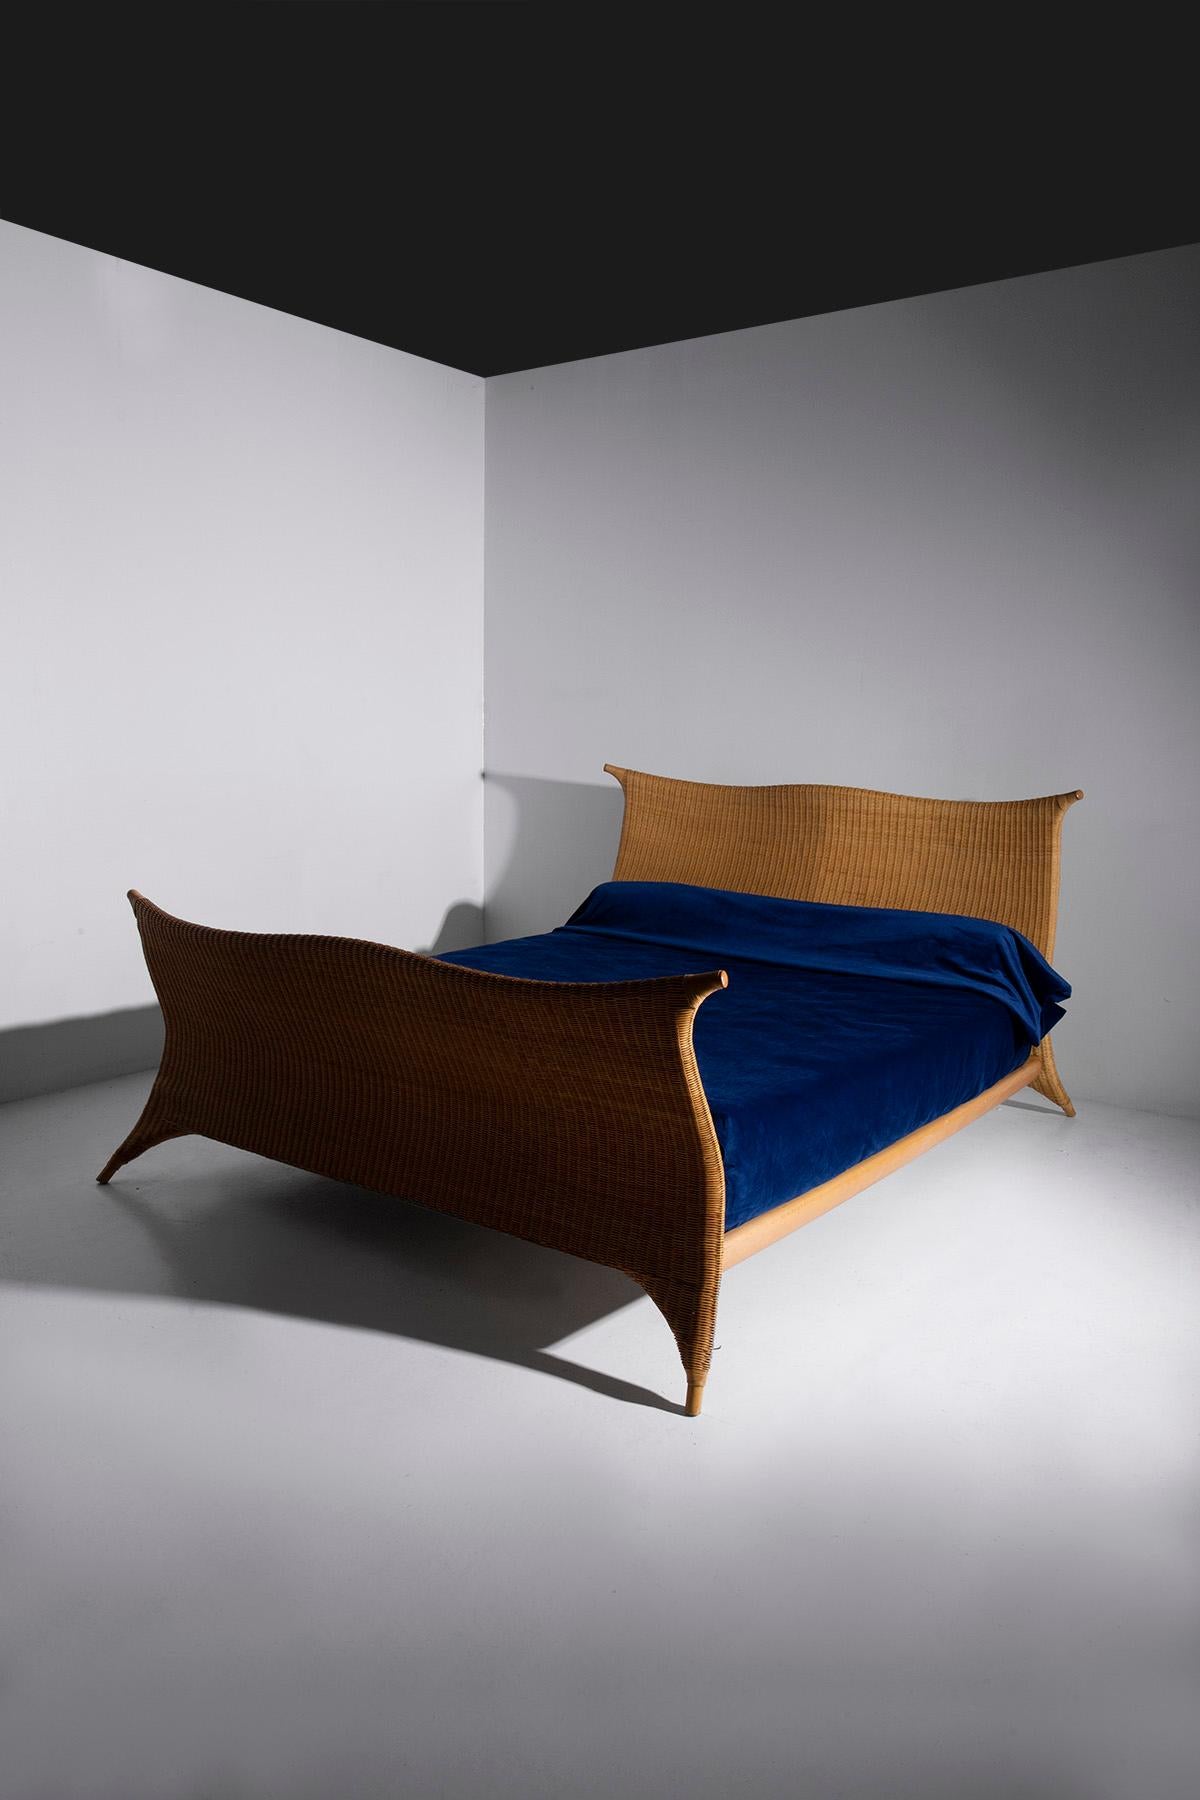 Dans le monde enchanteur du mobilier de chambre à coucher, il existe une création intemporelle des mains artistiques de PierAntonio Bonaccina, un chef-d'œuvre né dans les vibrantes années 1970. Ce lit en rotin italien est un témoignage de